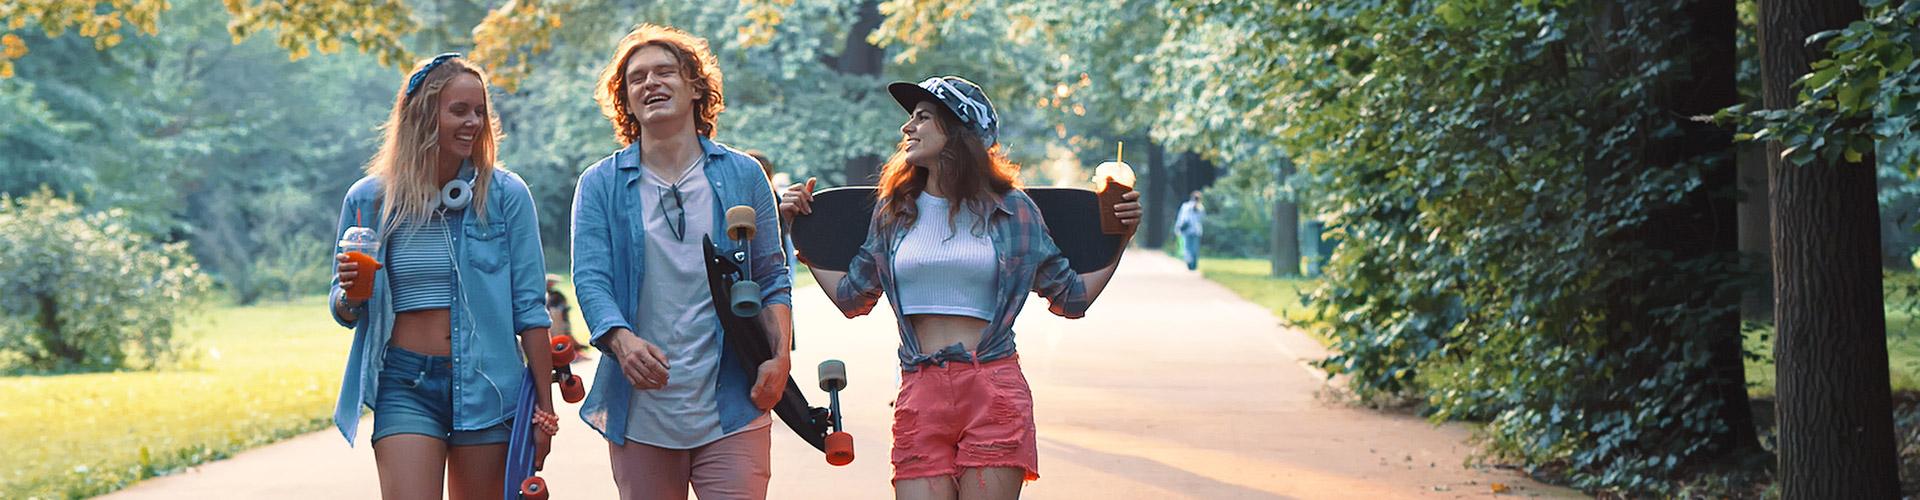 Cuenta Joven In - Grupo de jovenes vestidos con ropa moderna con patinetes, sonriendo junto a un parque rodeado de arboles